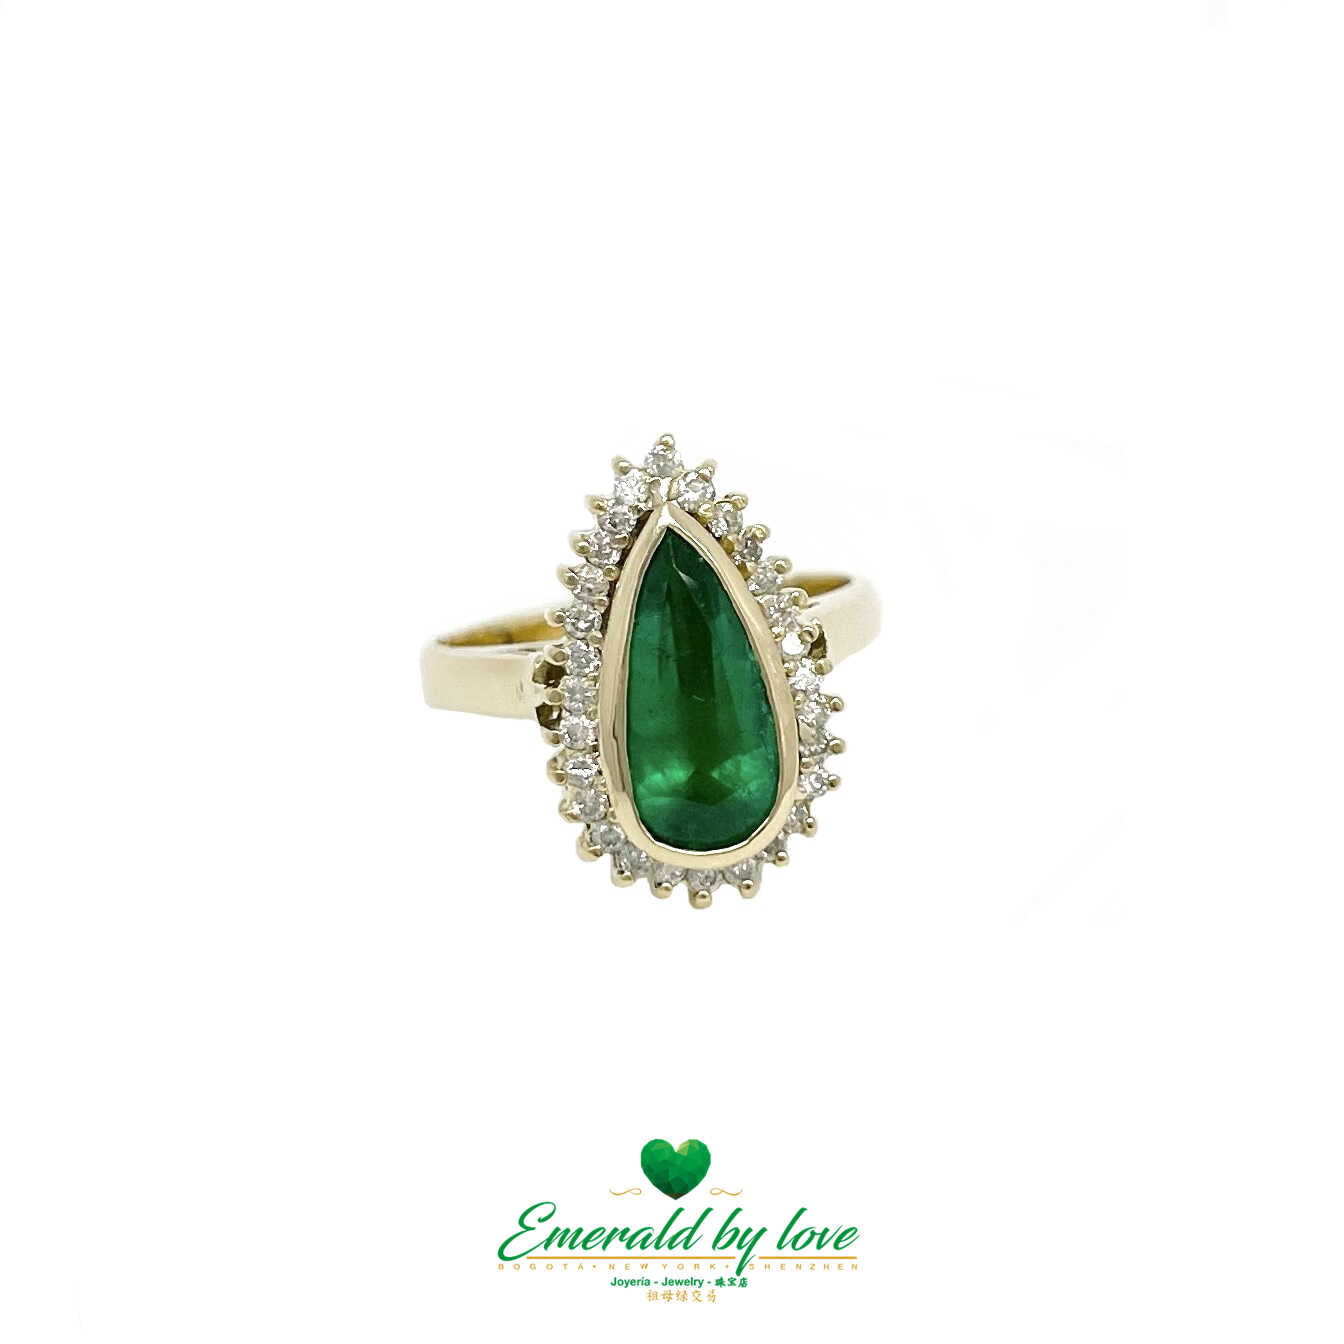 Espectacular diseño marquesa: esmeralda en forma de lágrima rodeada de diamantes en oro amarillo